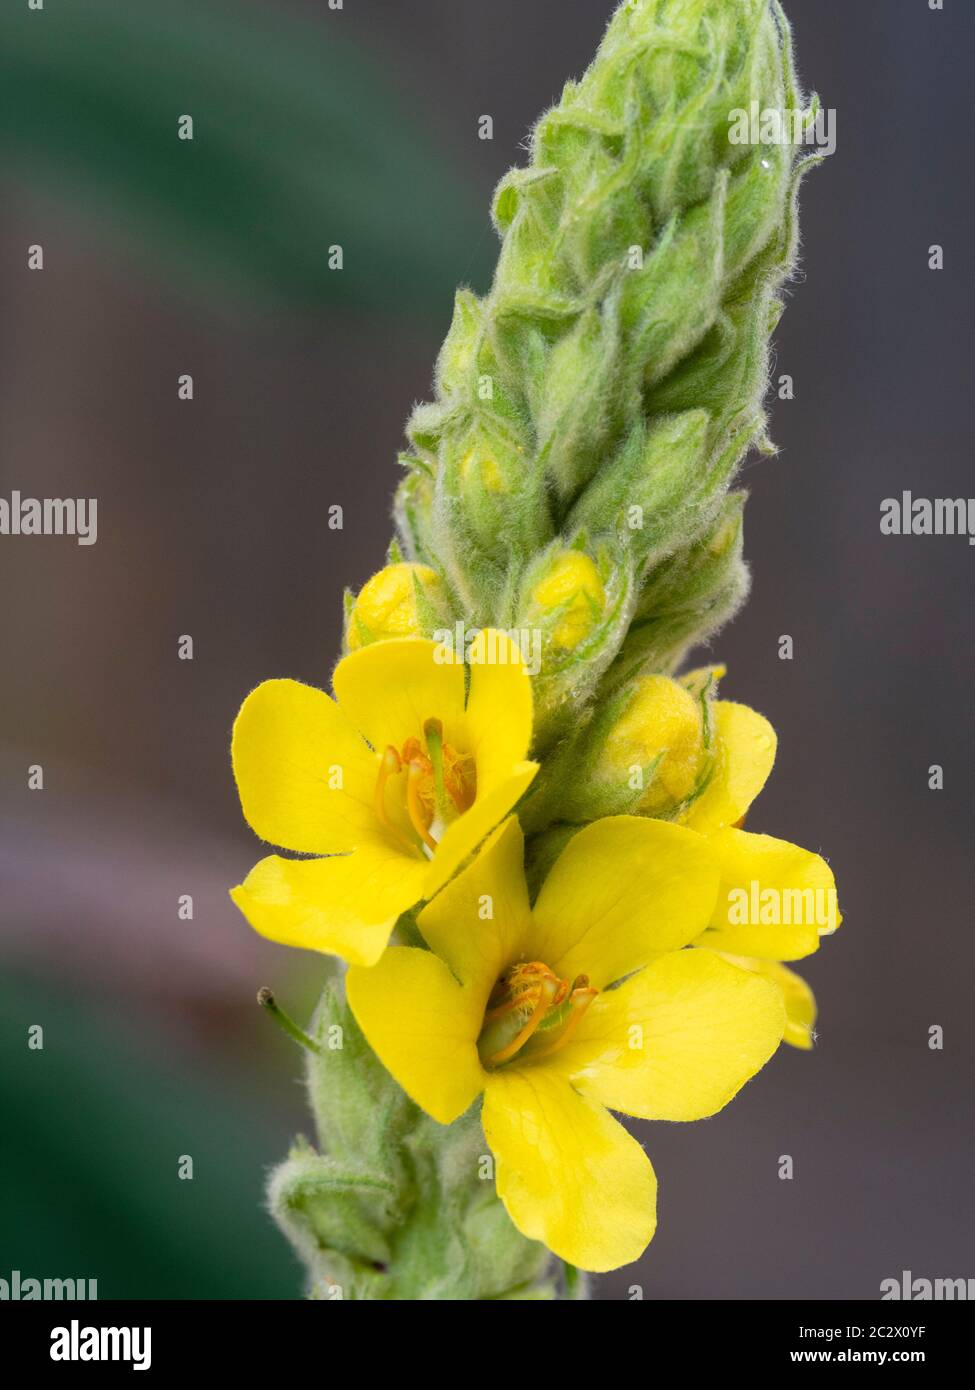 Flores amarillas de verano en la espiga de mullein común, Verbascum thapsus, una flor silvestre del Reino Unido utilizado en la medicina herbaria Foto de stock